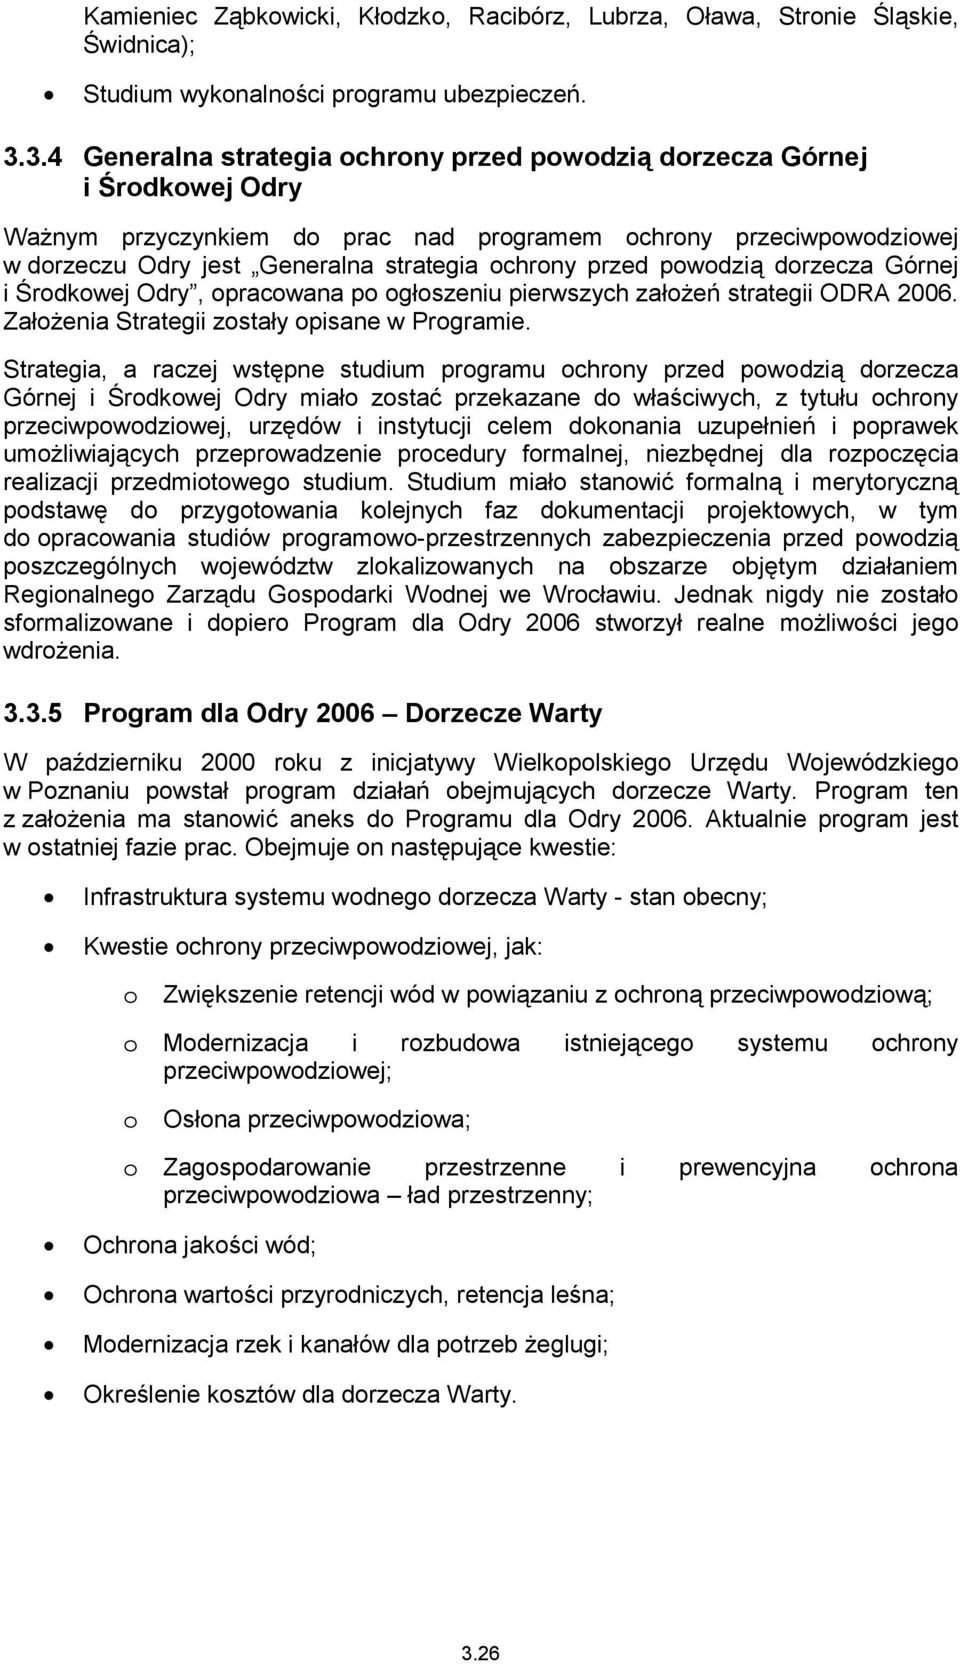 przed powodzią dorzecza Górnej i Środkowej Odry, opracowana po ogłoszeniu pierwszych założeń strategii ODRA 2006. Założenia Strategii zostały opisane w Programie.